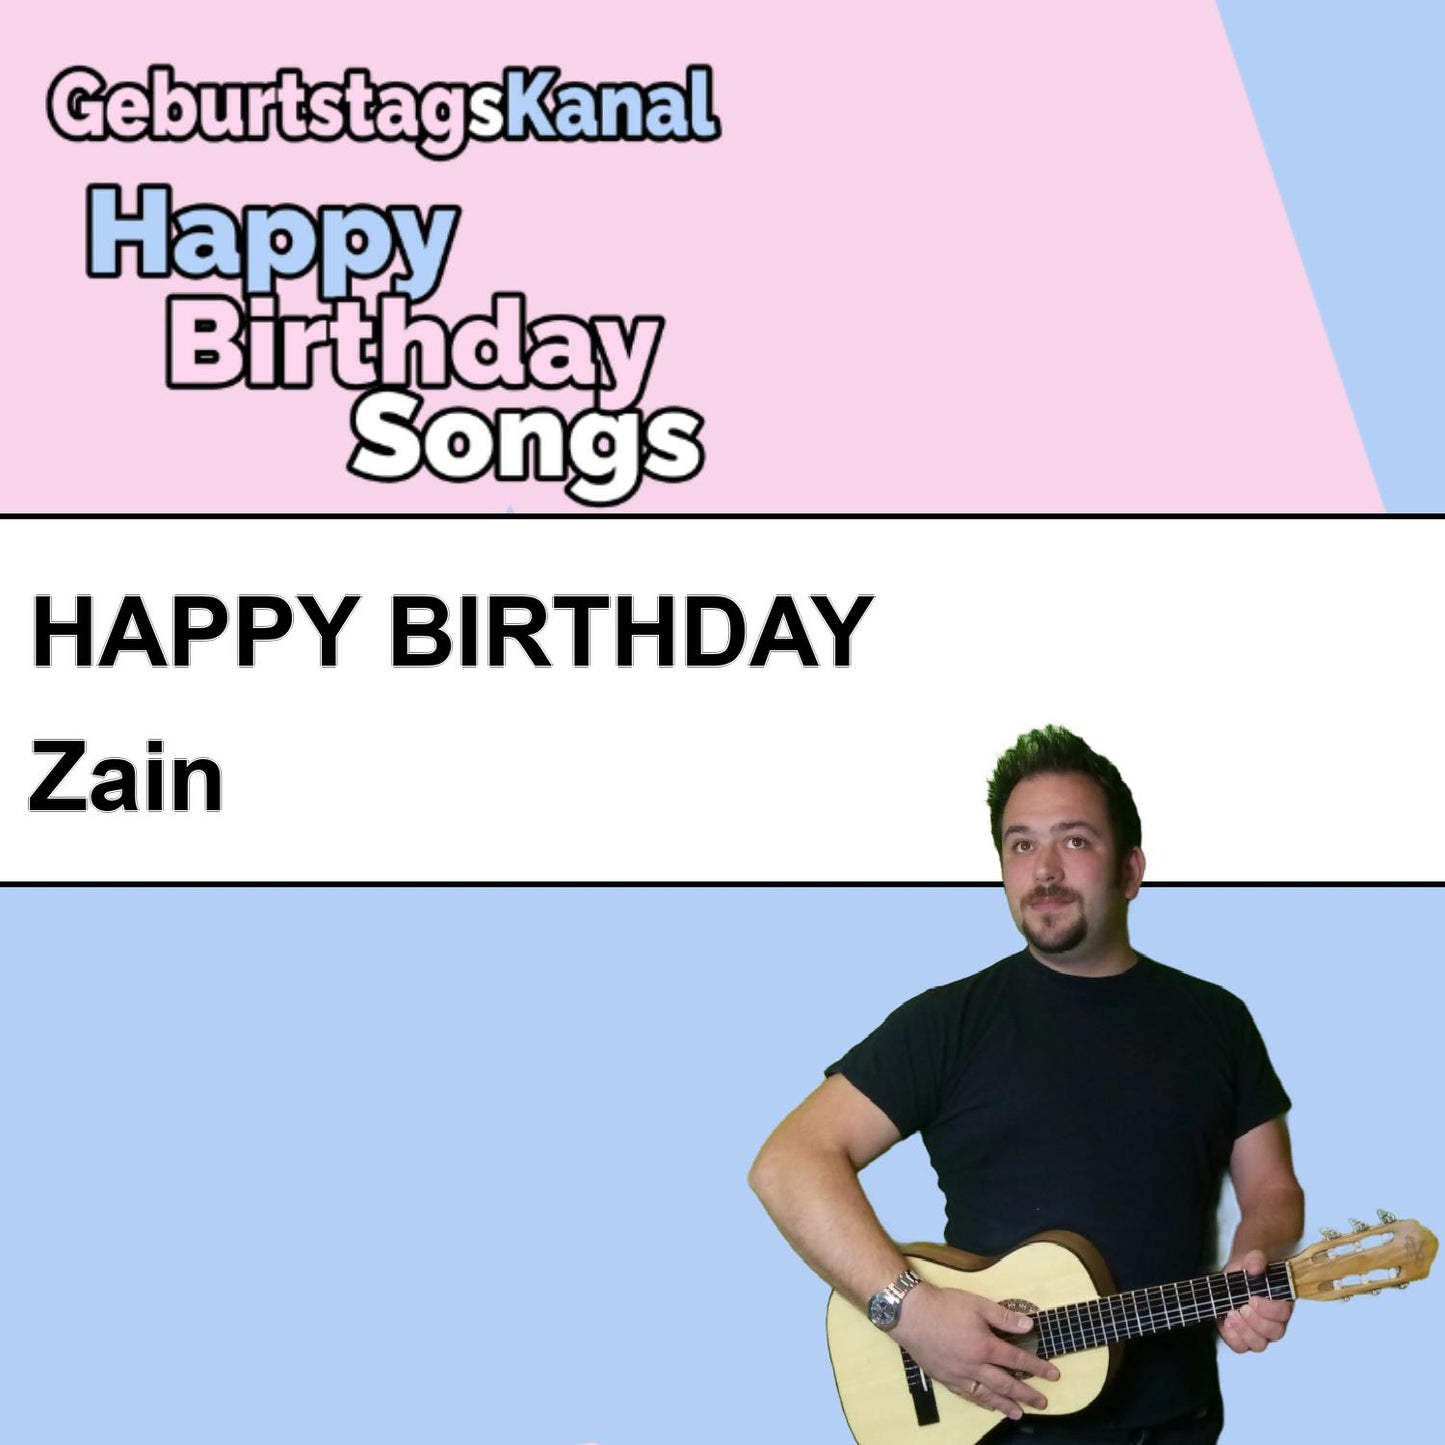 Produktbild Happy Birthday to you Zain mit Wunschgrußbotschaft